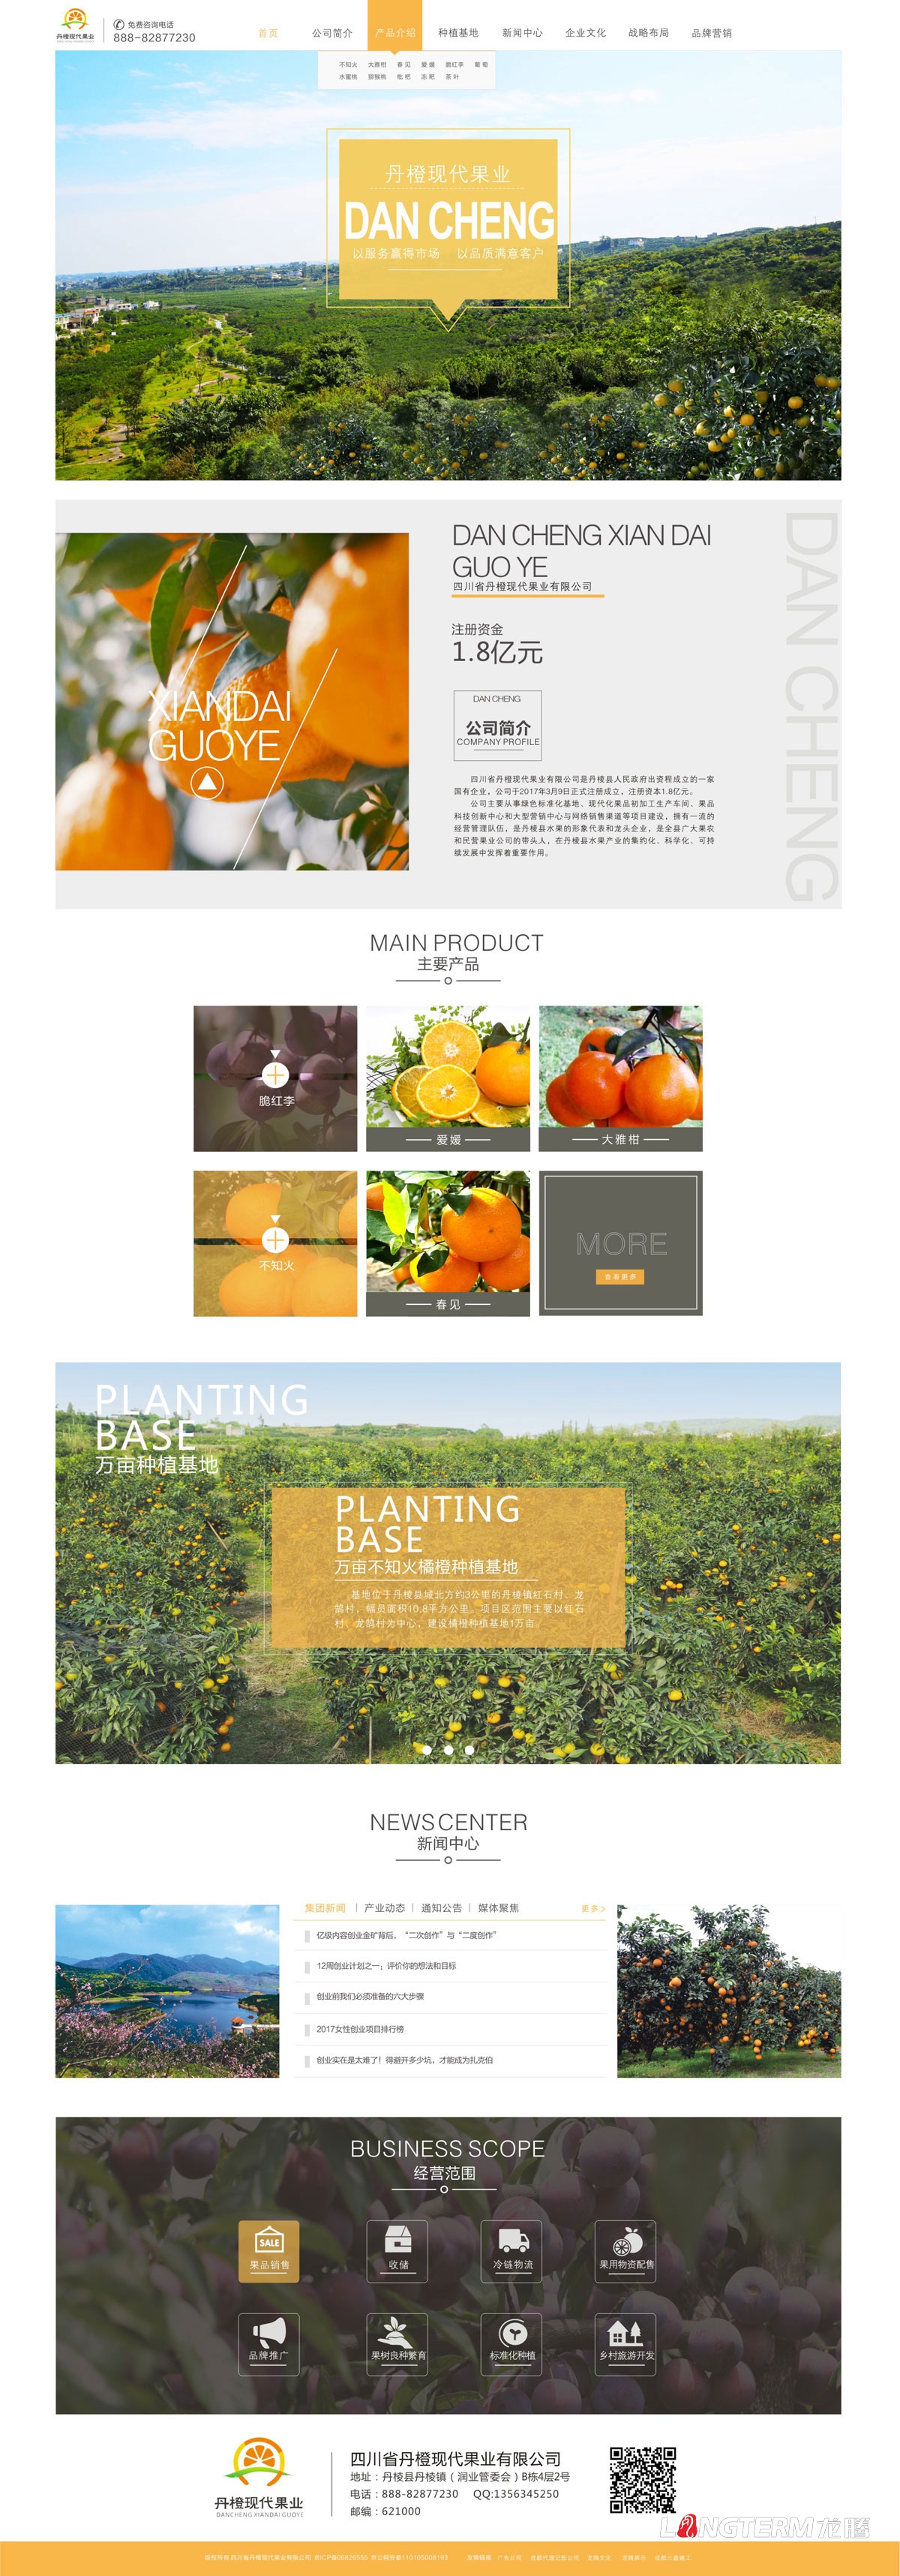 丹橙现代果业公司官网设计|不知火爱媛水果桔橙鲜果蔬菜公司网站设计建设制作开发